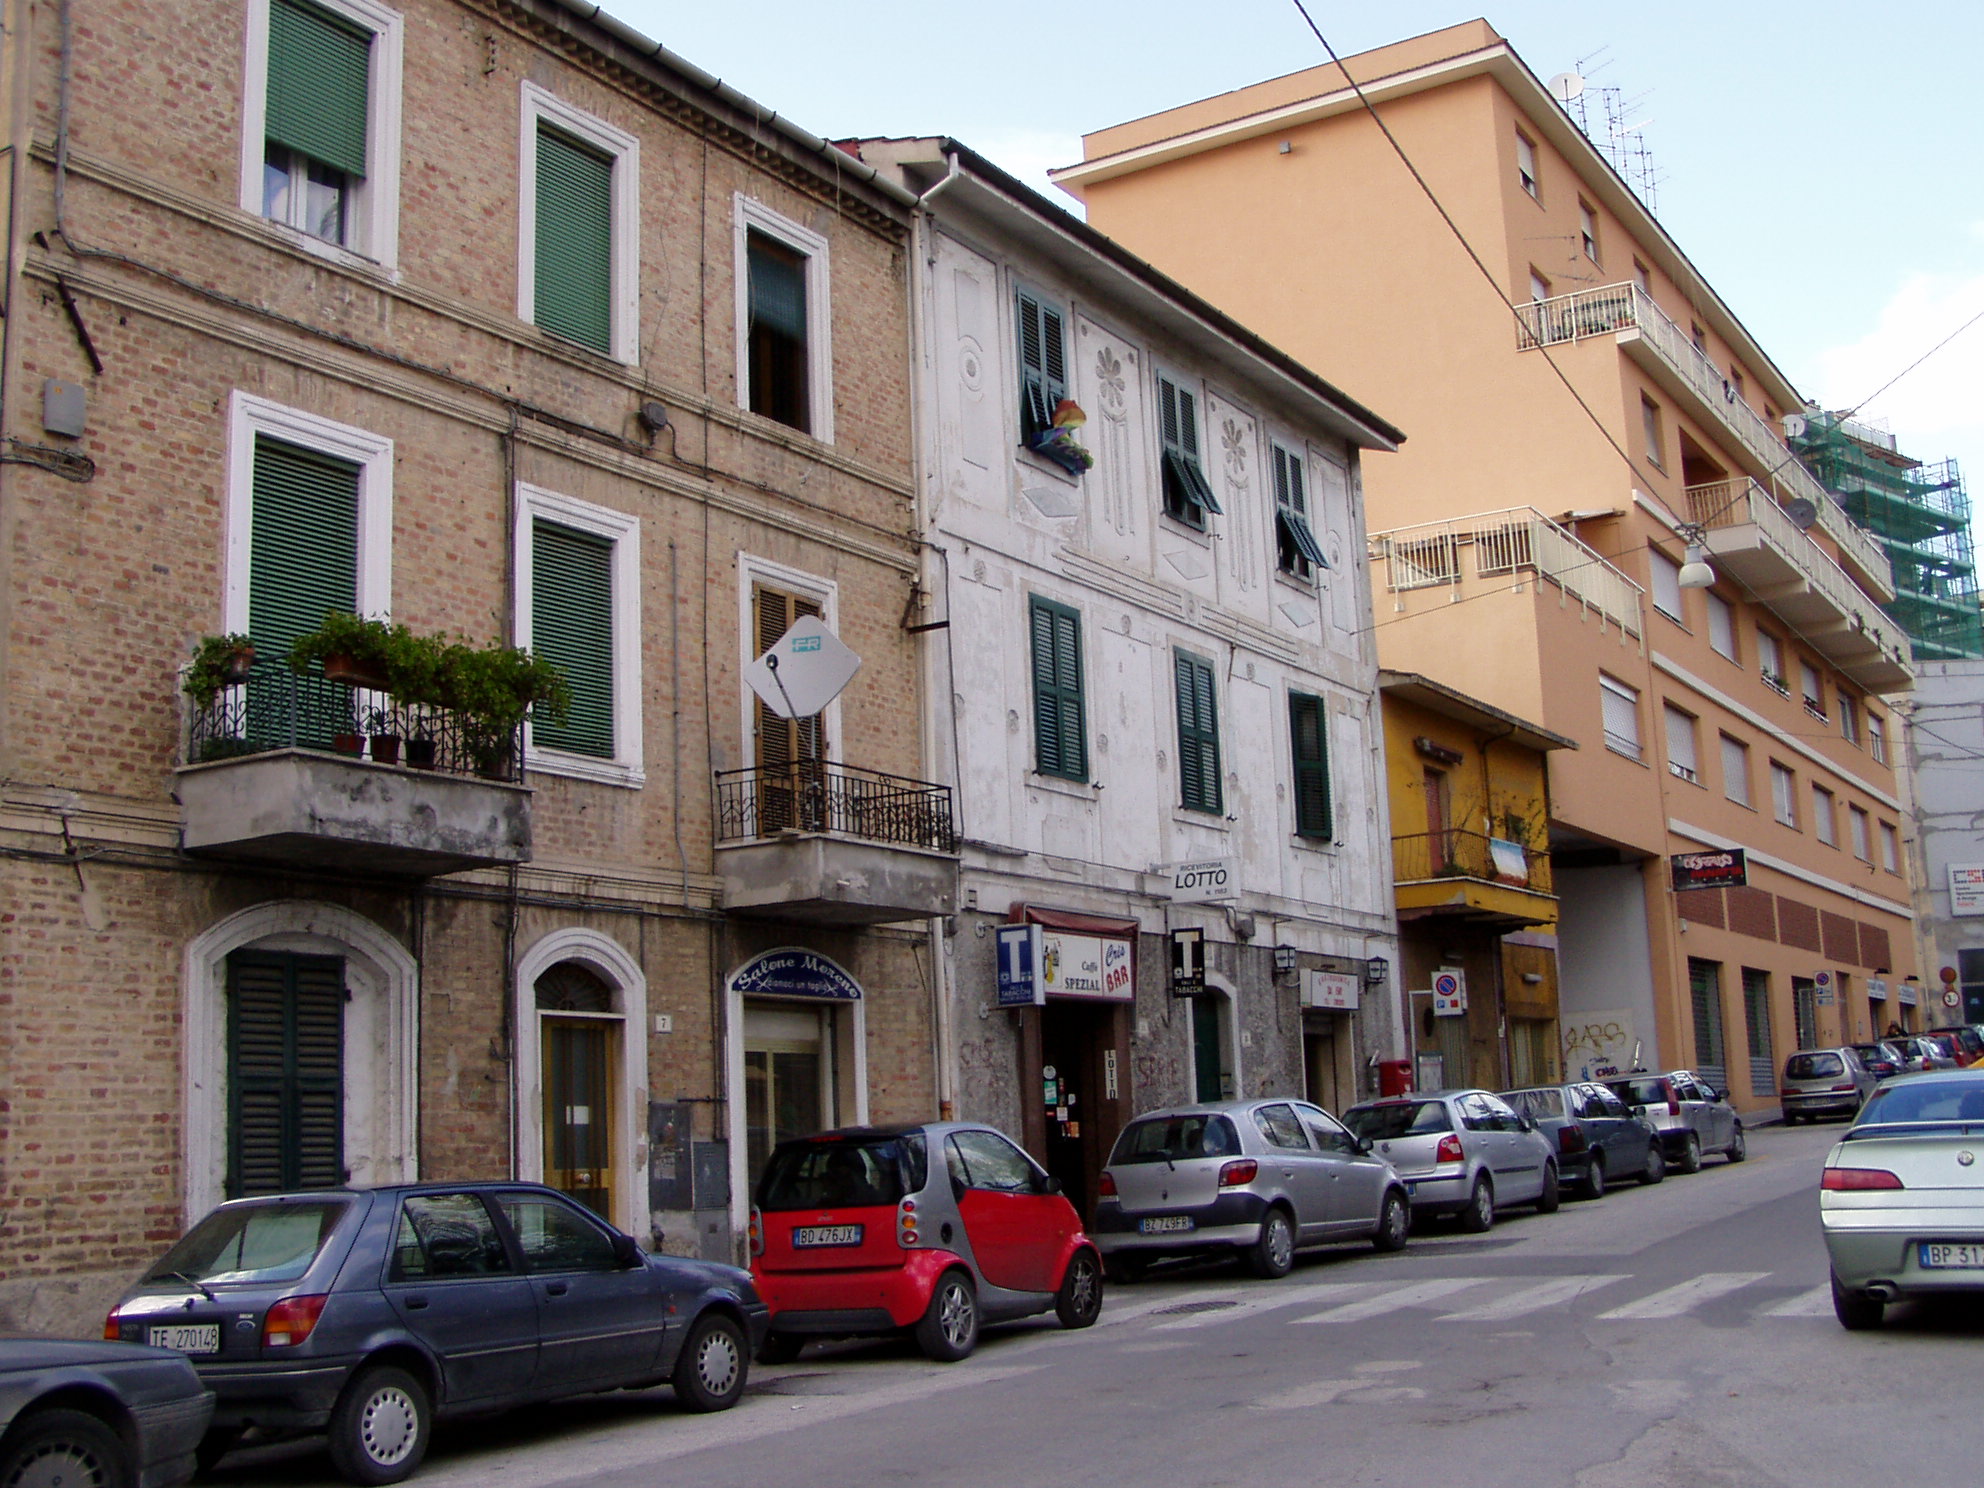 Casa in stile liberty (casa a schiera) - Ancona (AN) 